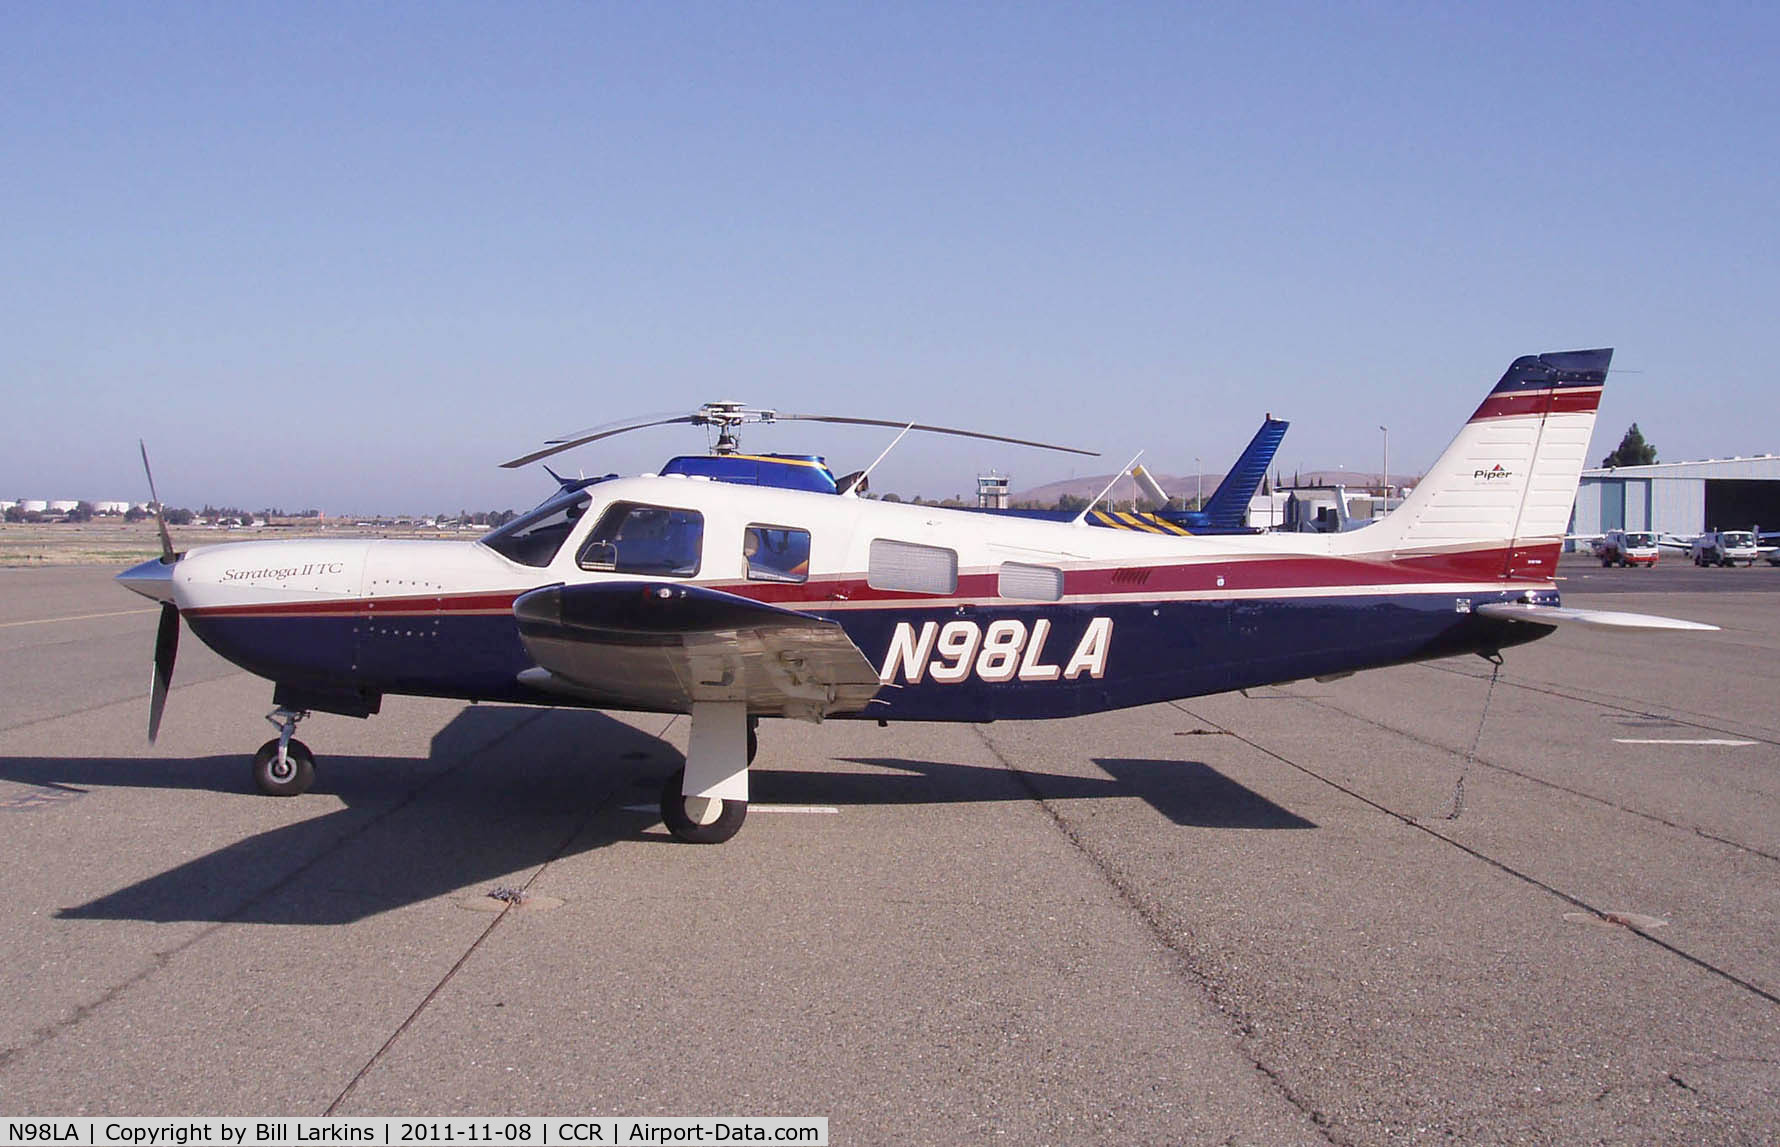 N98LA, 1998 Piper PA-32R-301T Turbo Saratoga C/N 3257031, Visitor